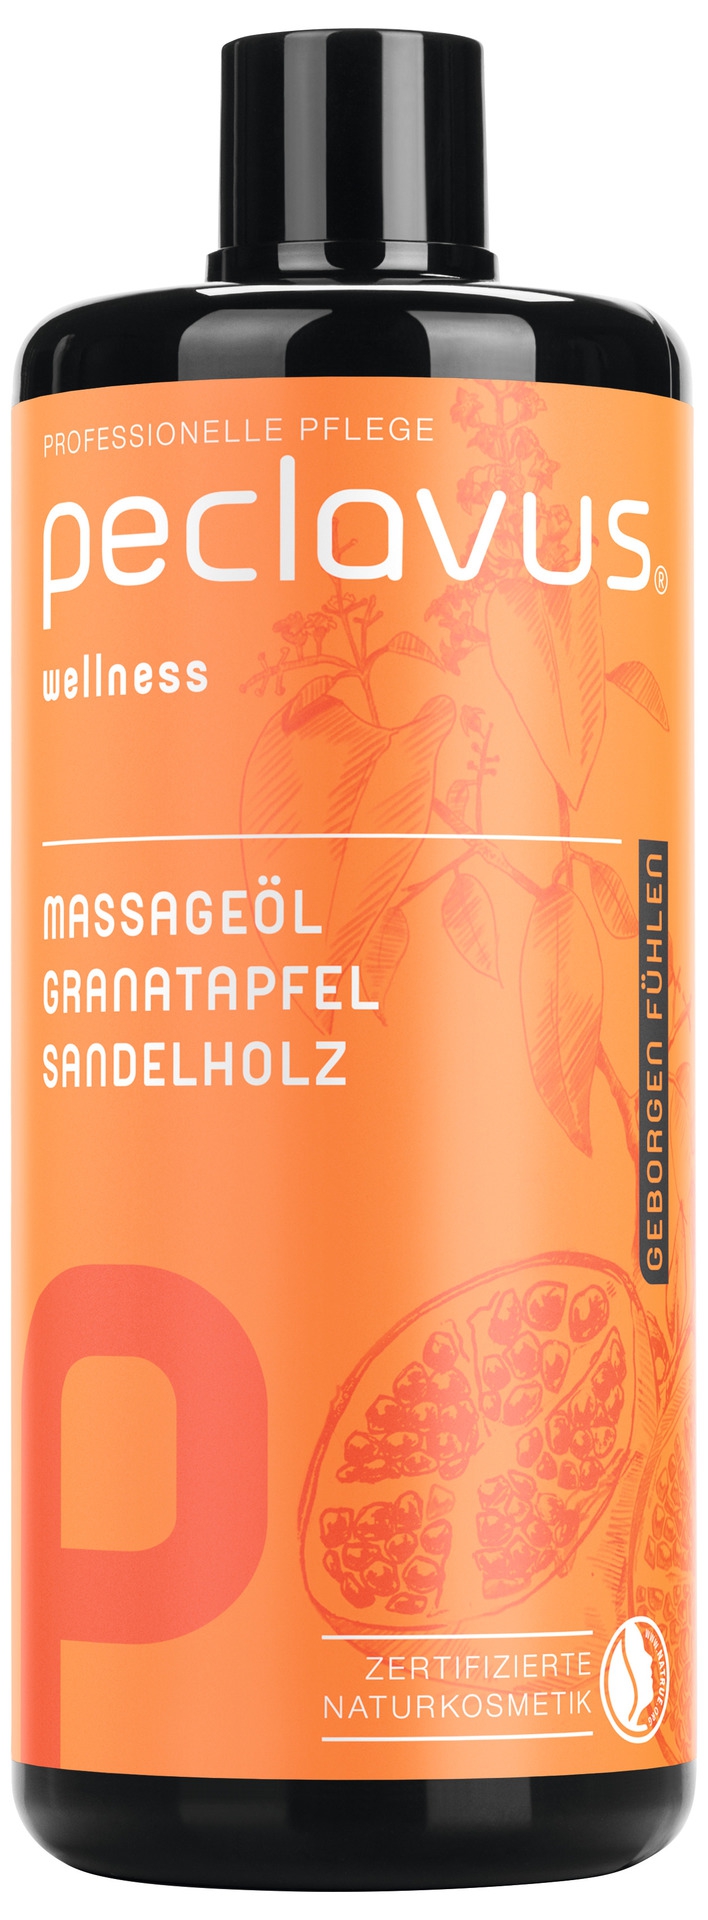 PECLAVUS Massageöl Granatapfel Sandelholz 500 ml | Geborgen fühlen